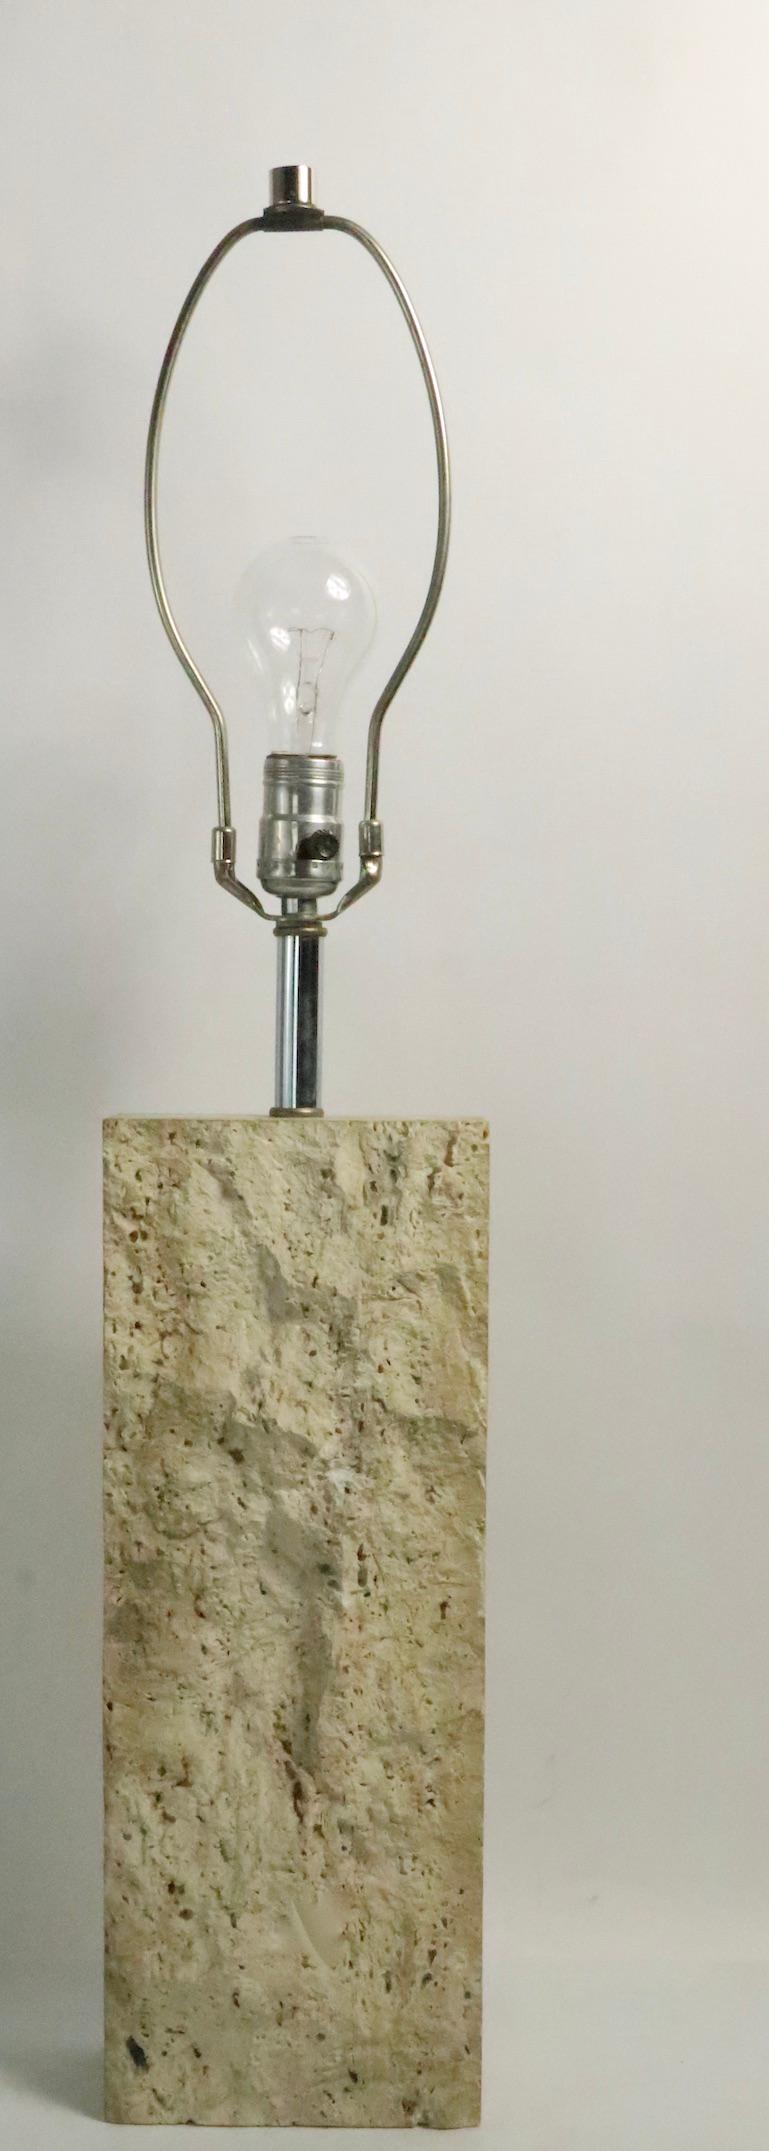 Schicke und raffinierte Tischlampe aus Travertin mit einer ungewöhnlichen, rauen Oberfläche auf der Vorderseite.
Made in Italy, ca. 1970er Jahre, original, funktionstüchtig, sauber und einsatzbereit.
Die Lampe kann mit einer Standard-Schraubbirne